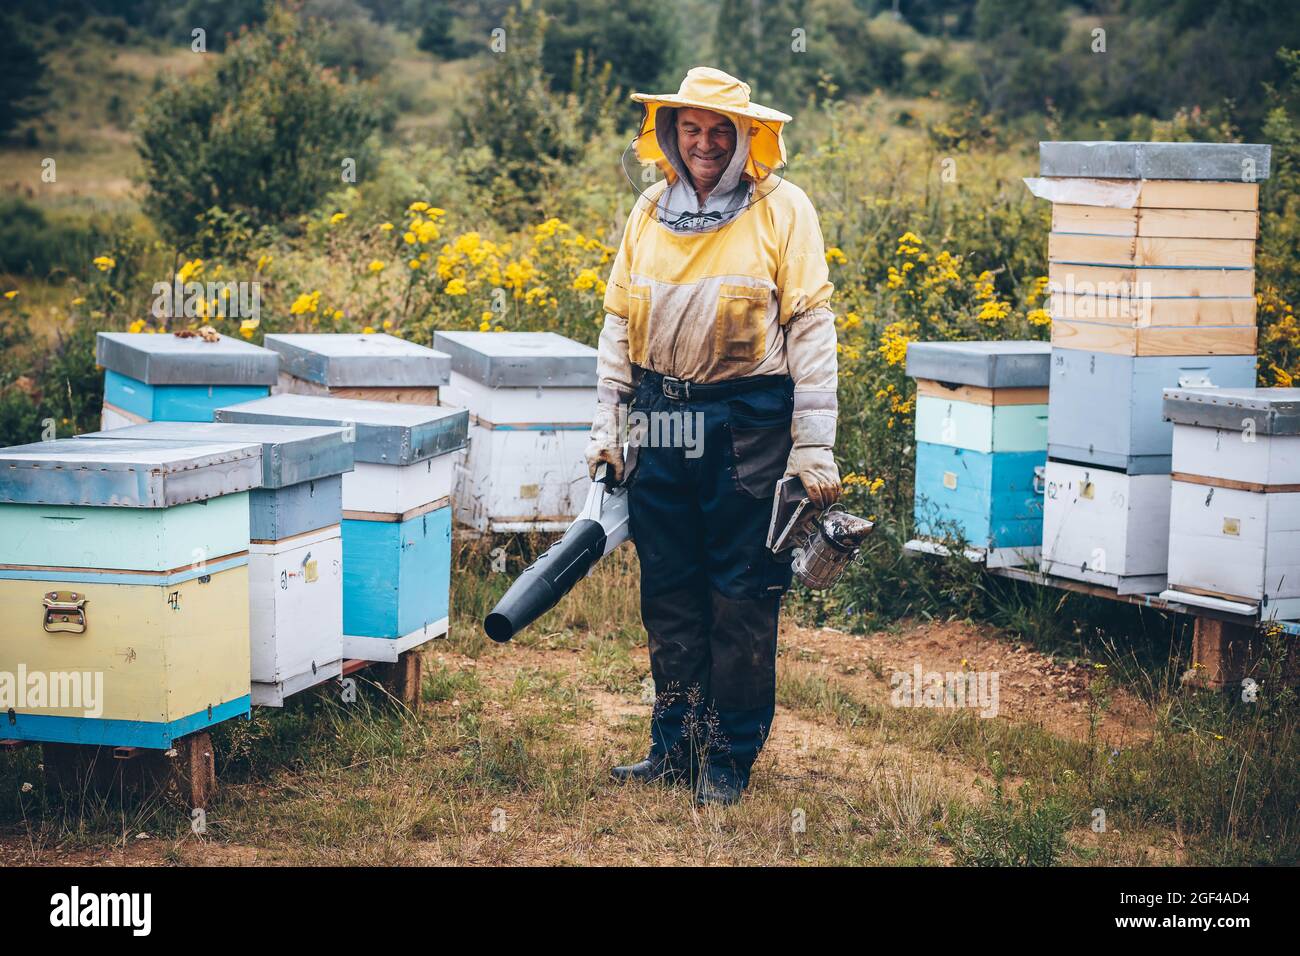 Imker in Schutzkleidung arbeiten in seinem Bienenhaus. Bienenzuchtkonzept Stockfoto